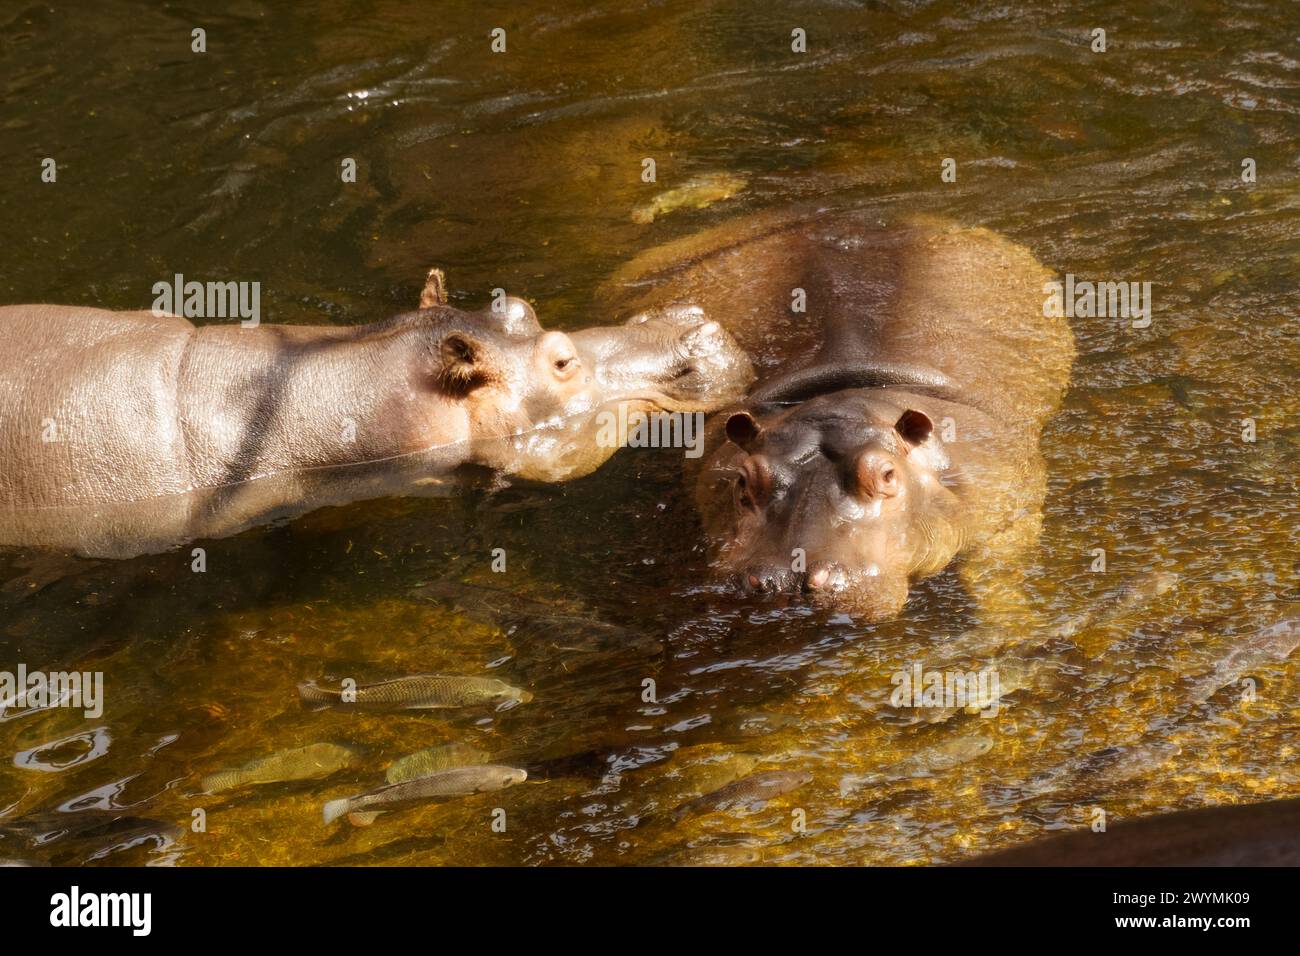 Zwei Flusspferde, große Wassersäugetiere, schwimmen in einem Gewässer, ihre Körper teilweise unter Wasser, nur ihre Köpfe sichtbar. Stockfoto